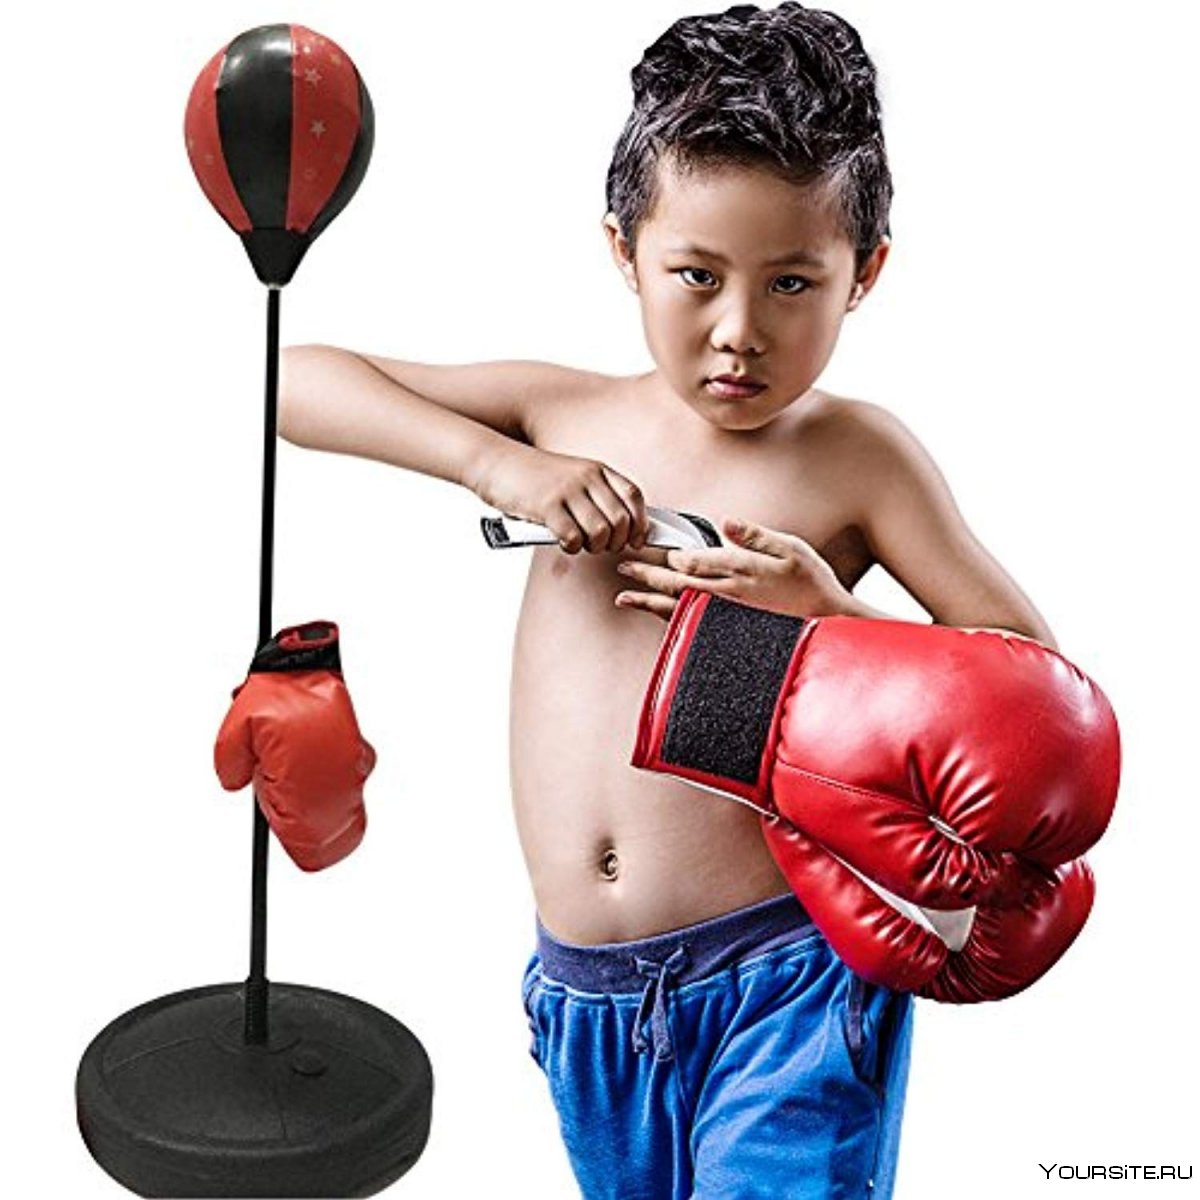 Ребенок в боксерских перчатках